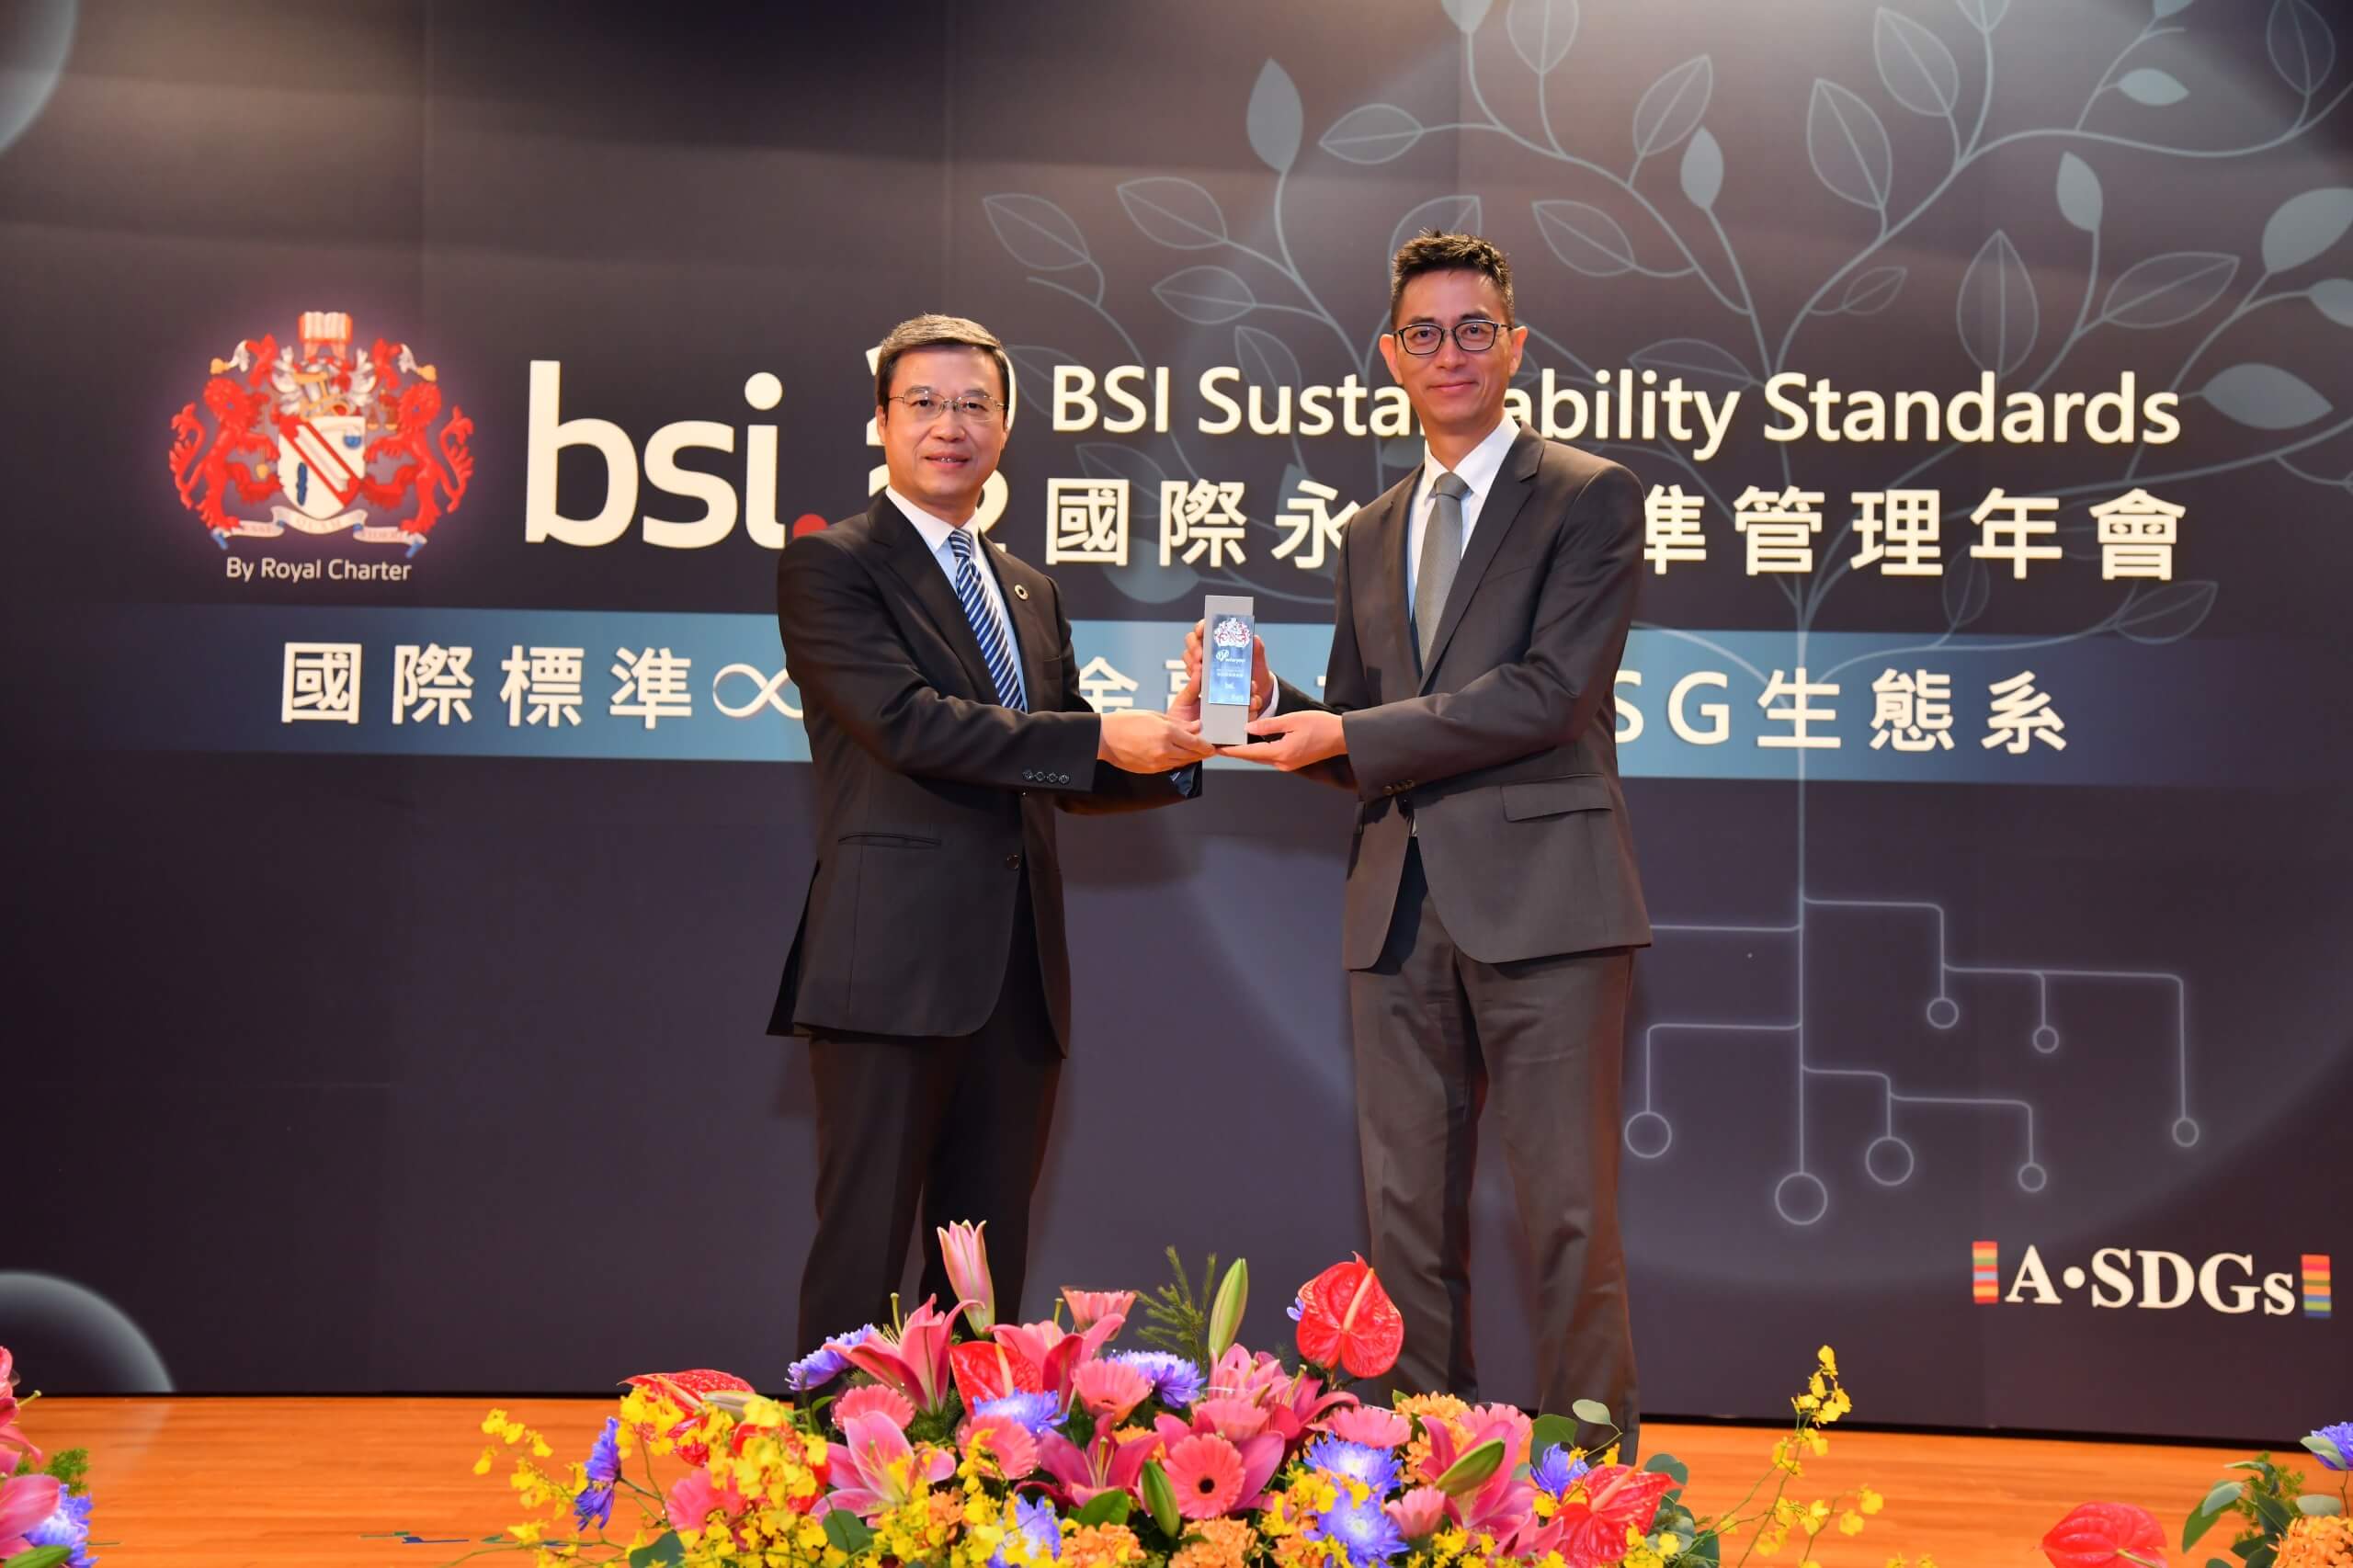 緯穎獲頒英國標準協會 BSI 2022 永續韌性獎